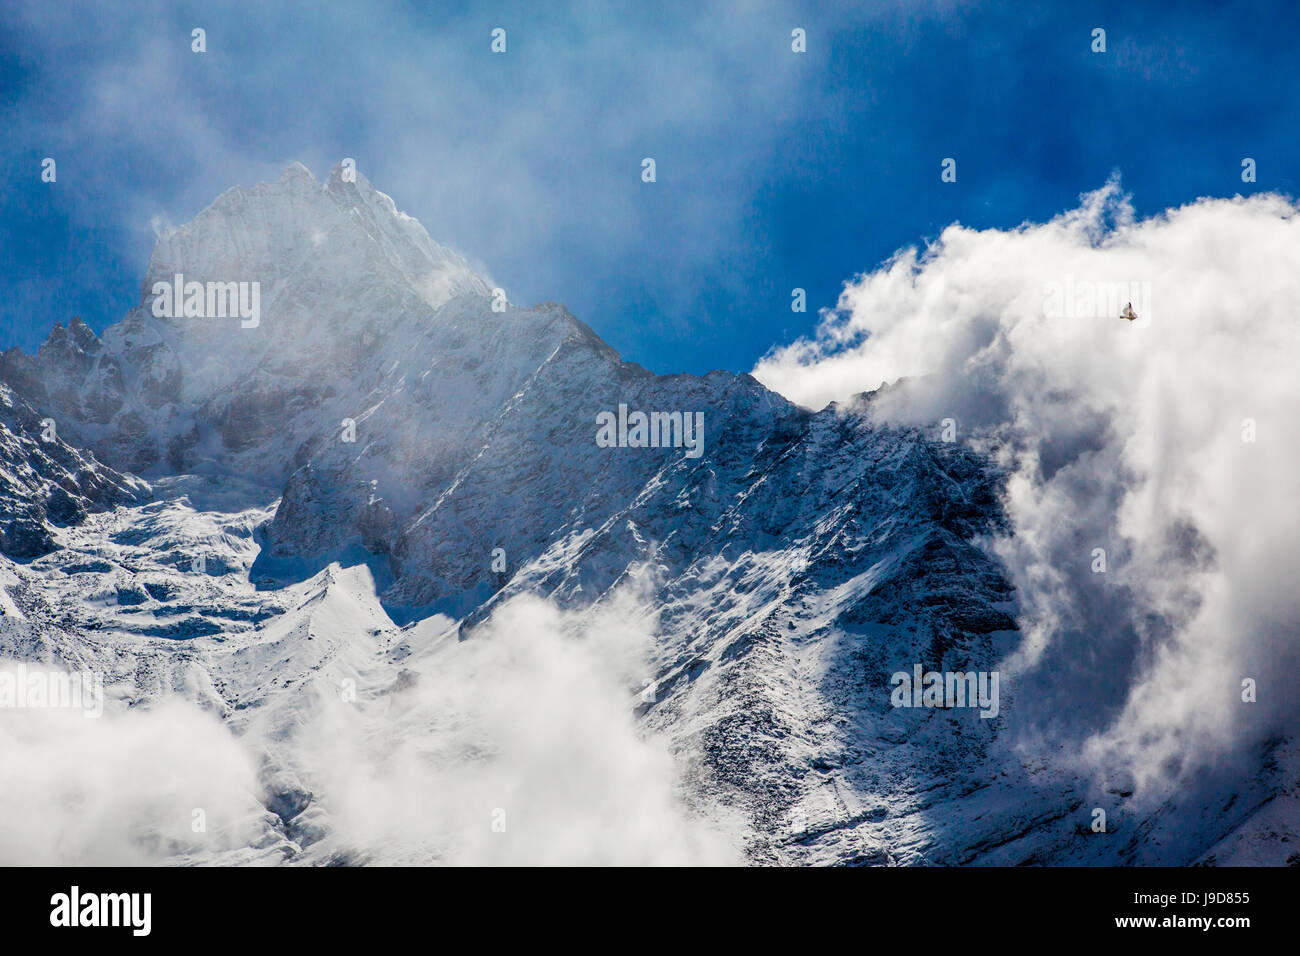 Sommet du Mont Everest, parc national de Sagarmatha, UNESCO World Heritage Site, Himalaya, Népal, Asie Banque D'Images